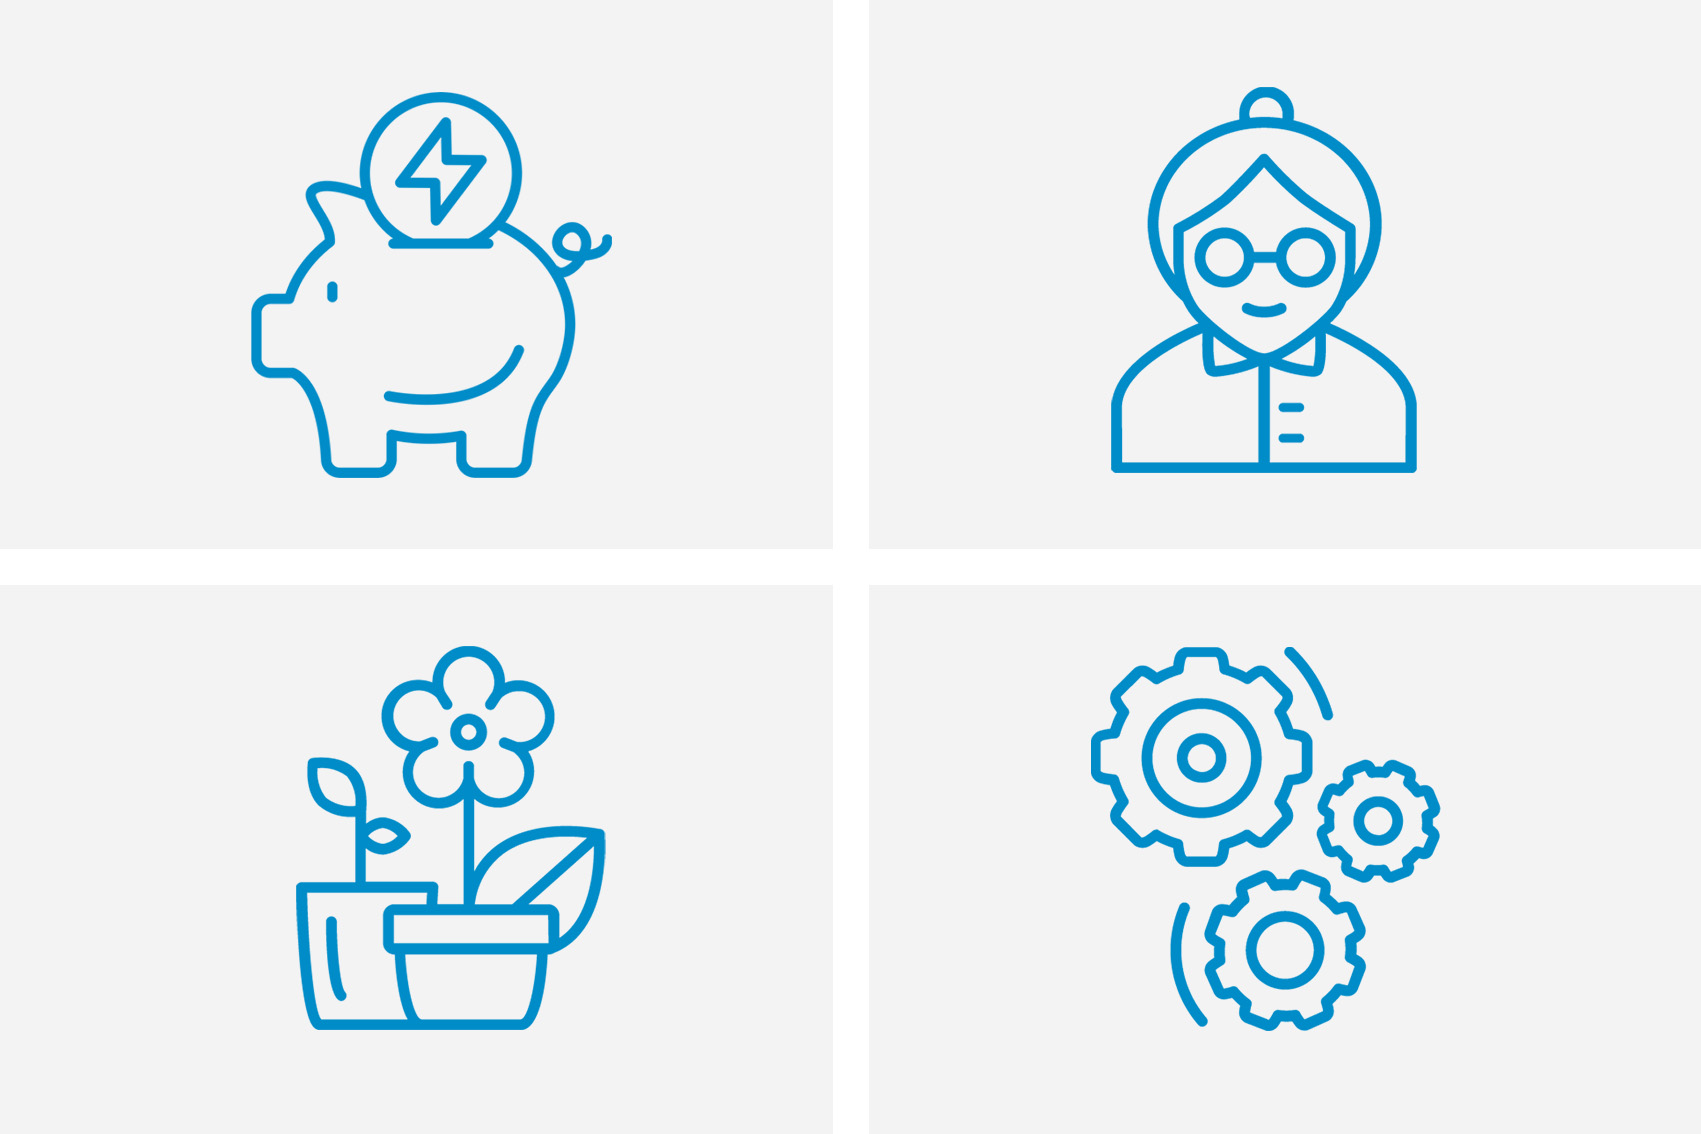 Vier verschiedene Piktogramme im gleichen Stil: Ein Sparschwein, eine Seniorin, Blumen und Zahnräder.